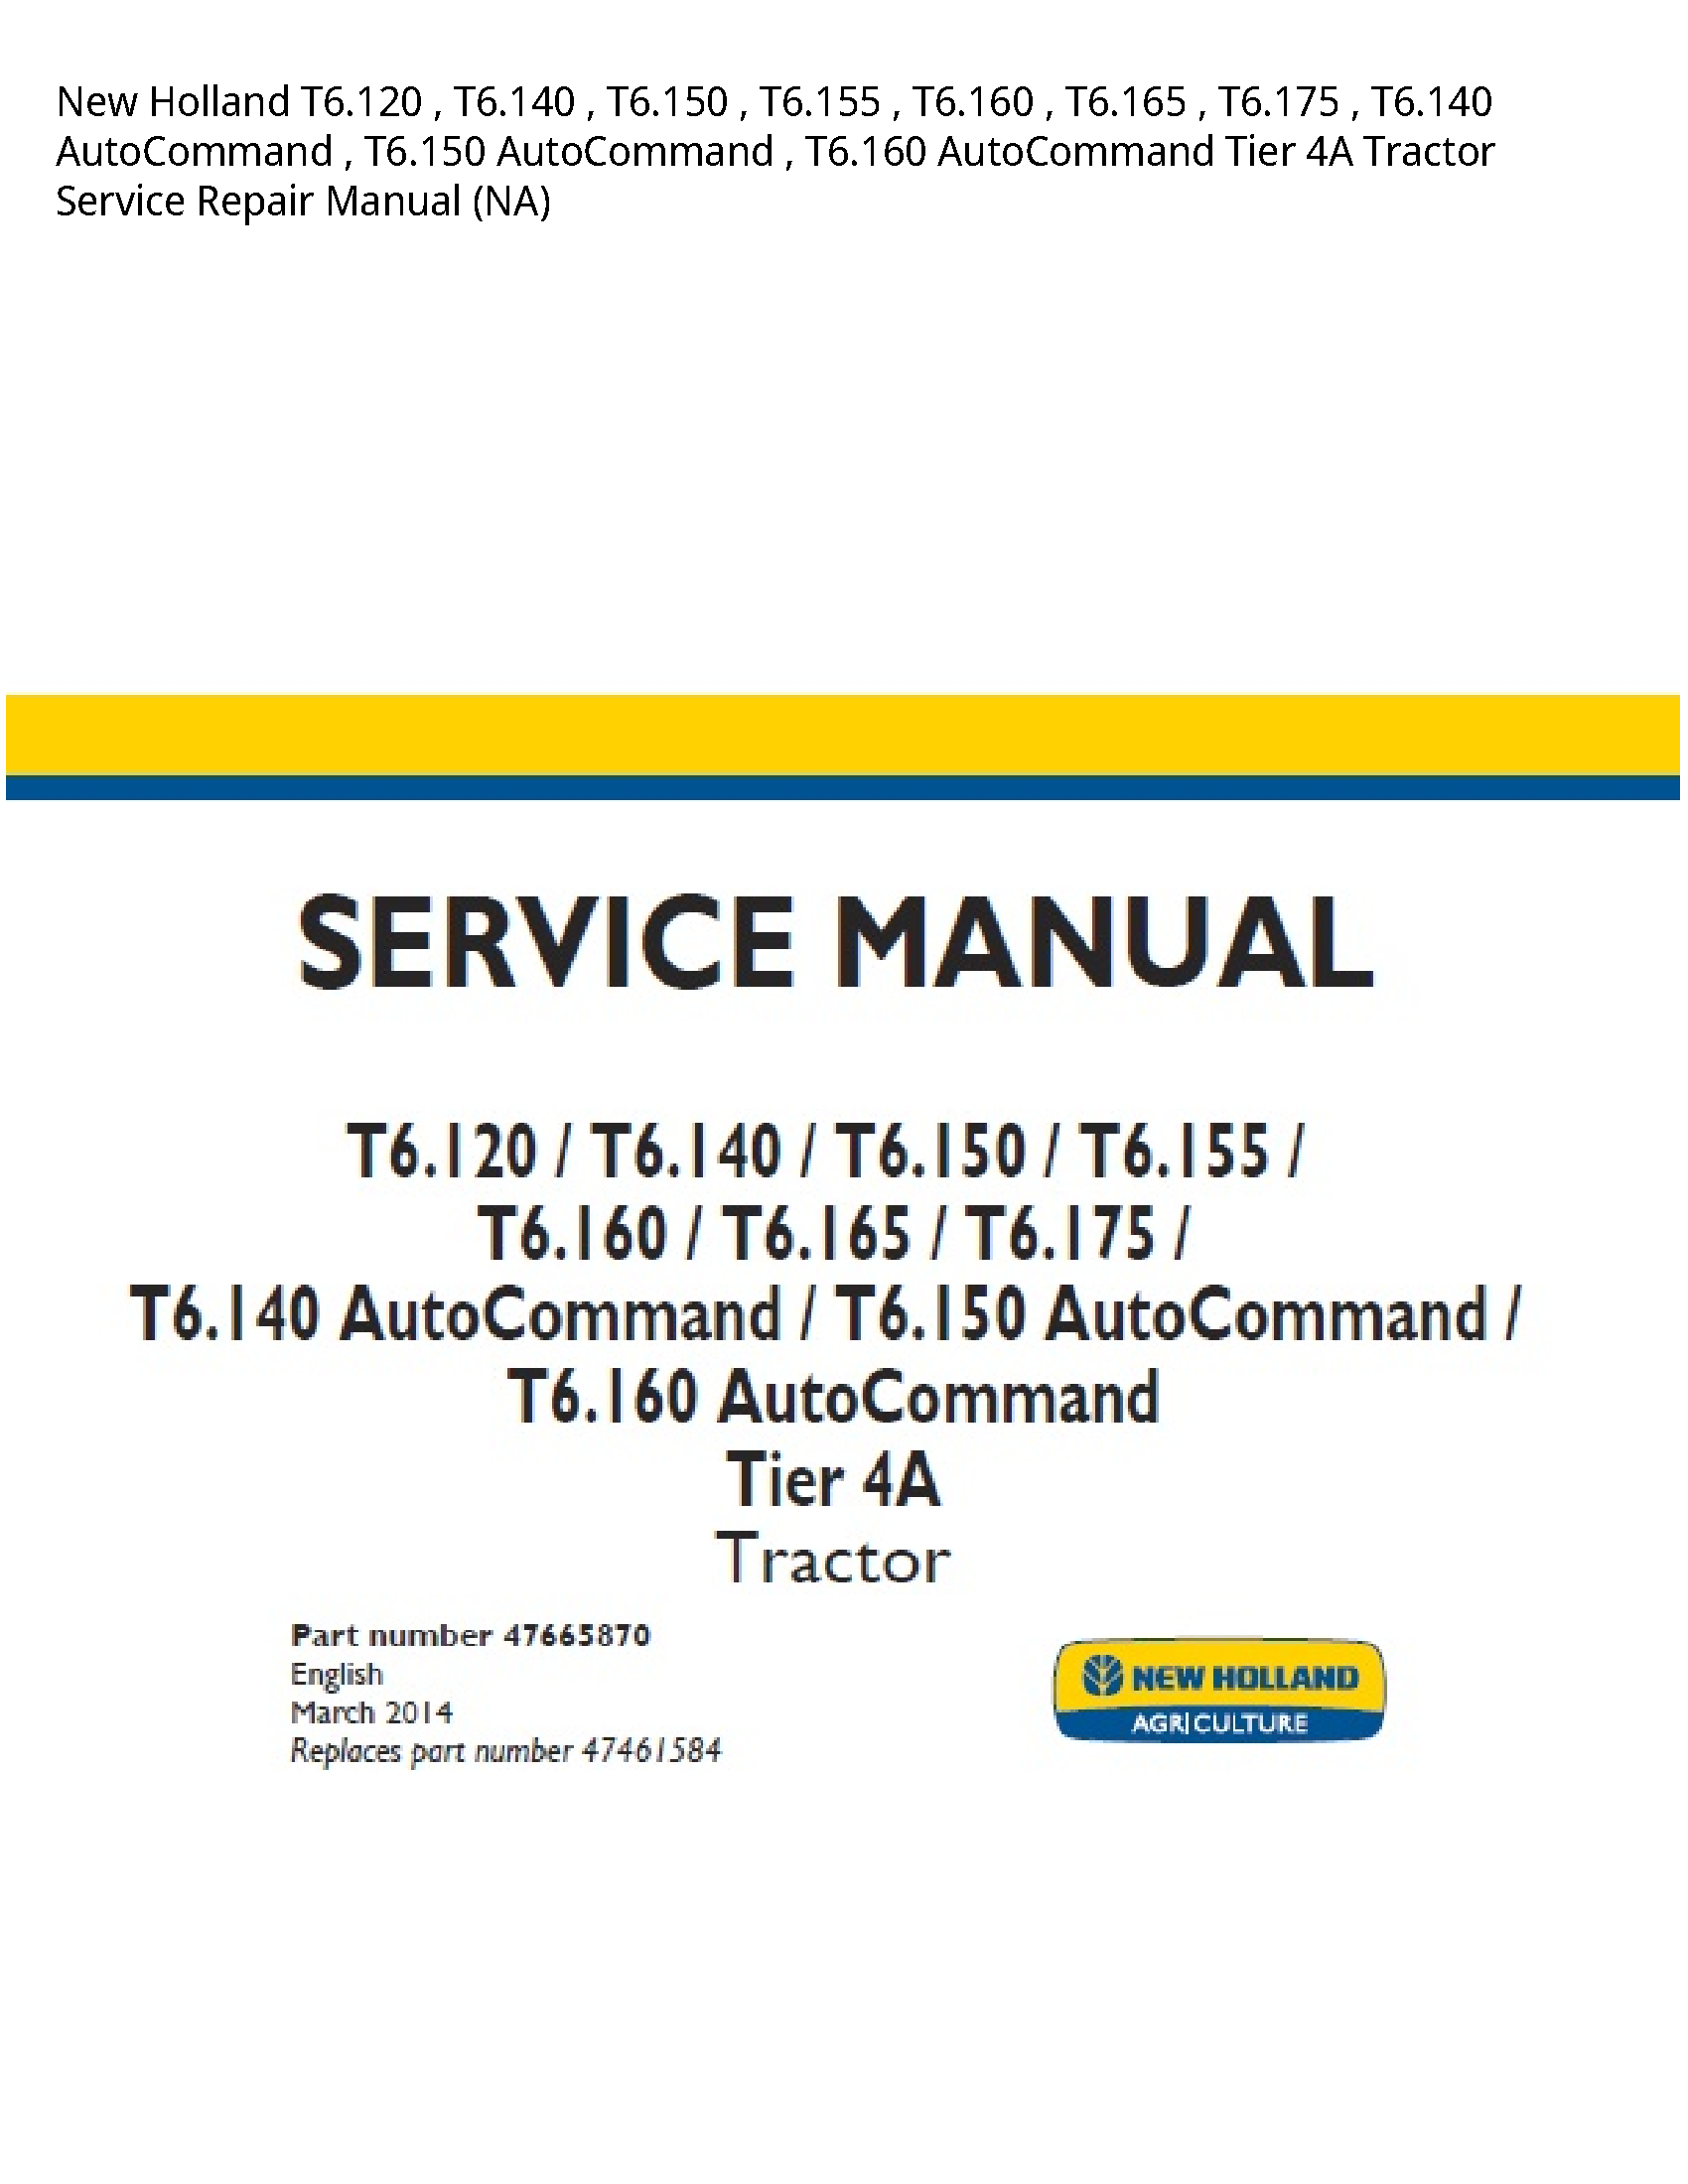 New Holland T6.120 AutoCommand AutoCommand AutoCommand Tier Tractor manual